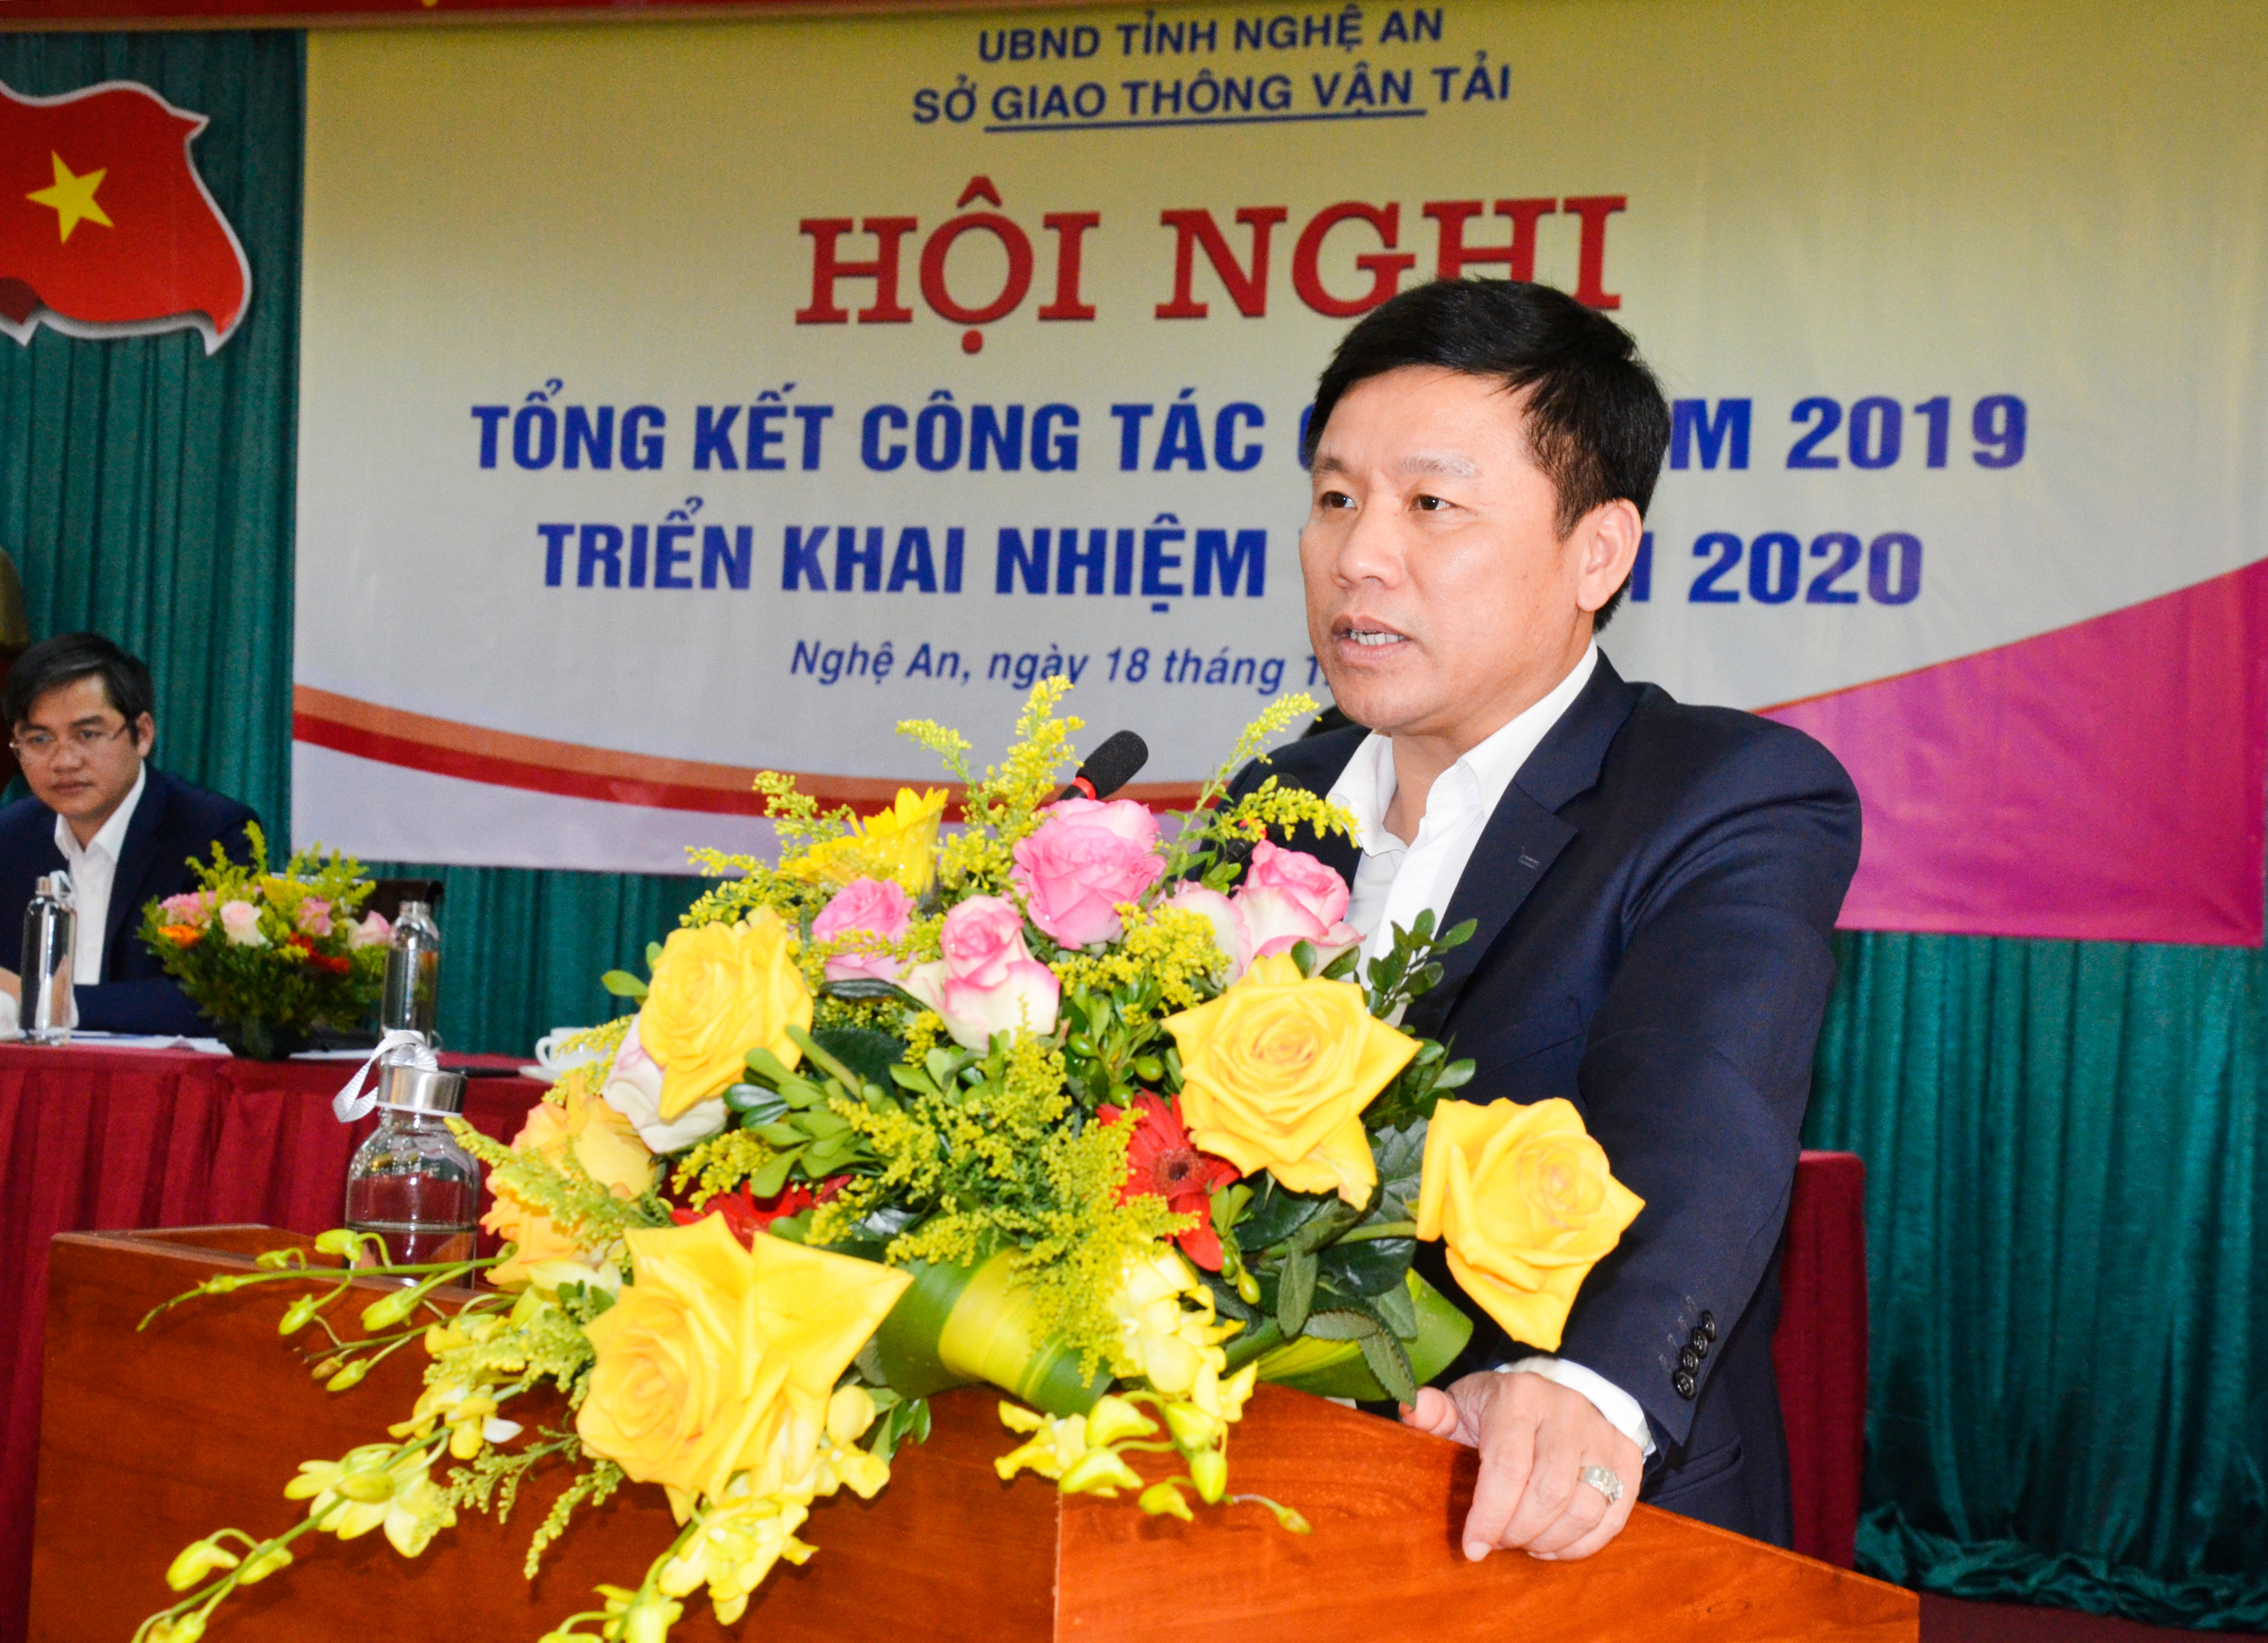 Giám đốc Sở Giao thông Vận tải Hoàng Phú Hiền báo kết quả của ngành Giap thông vận tải năm 2019. Ảnh: Thanh Lê